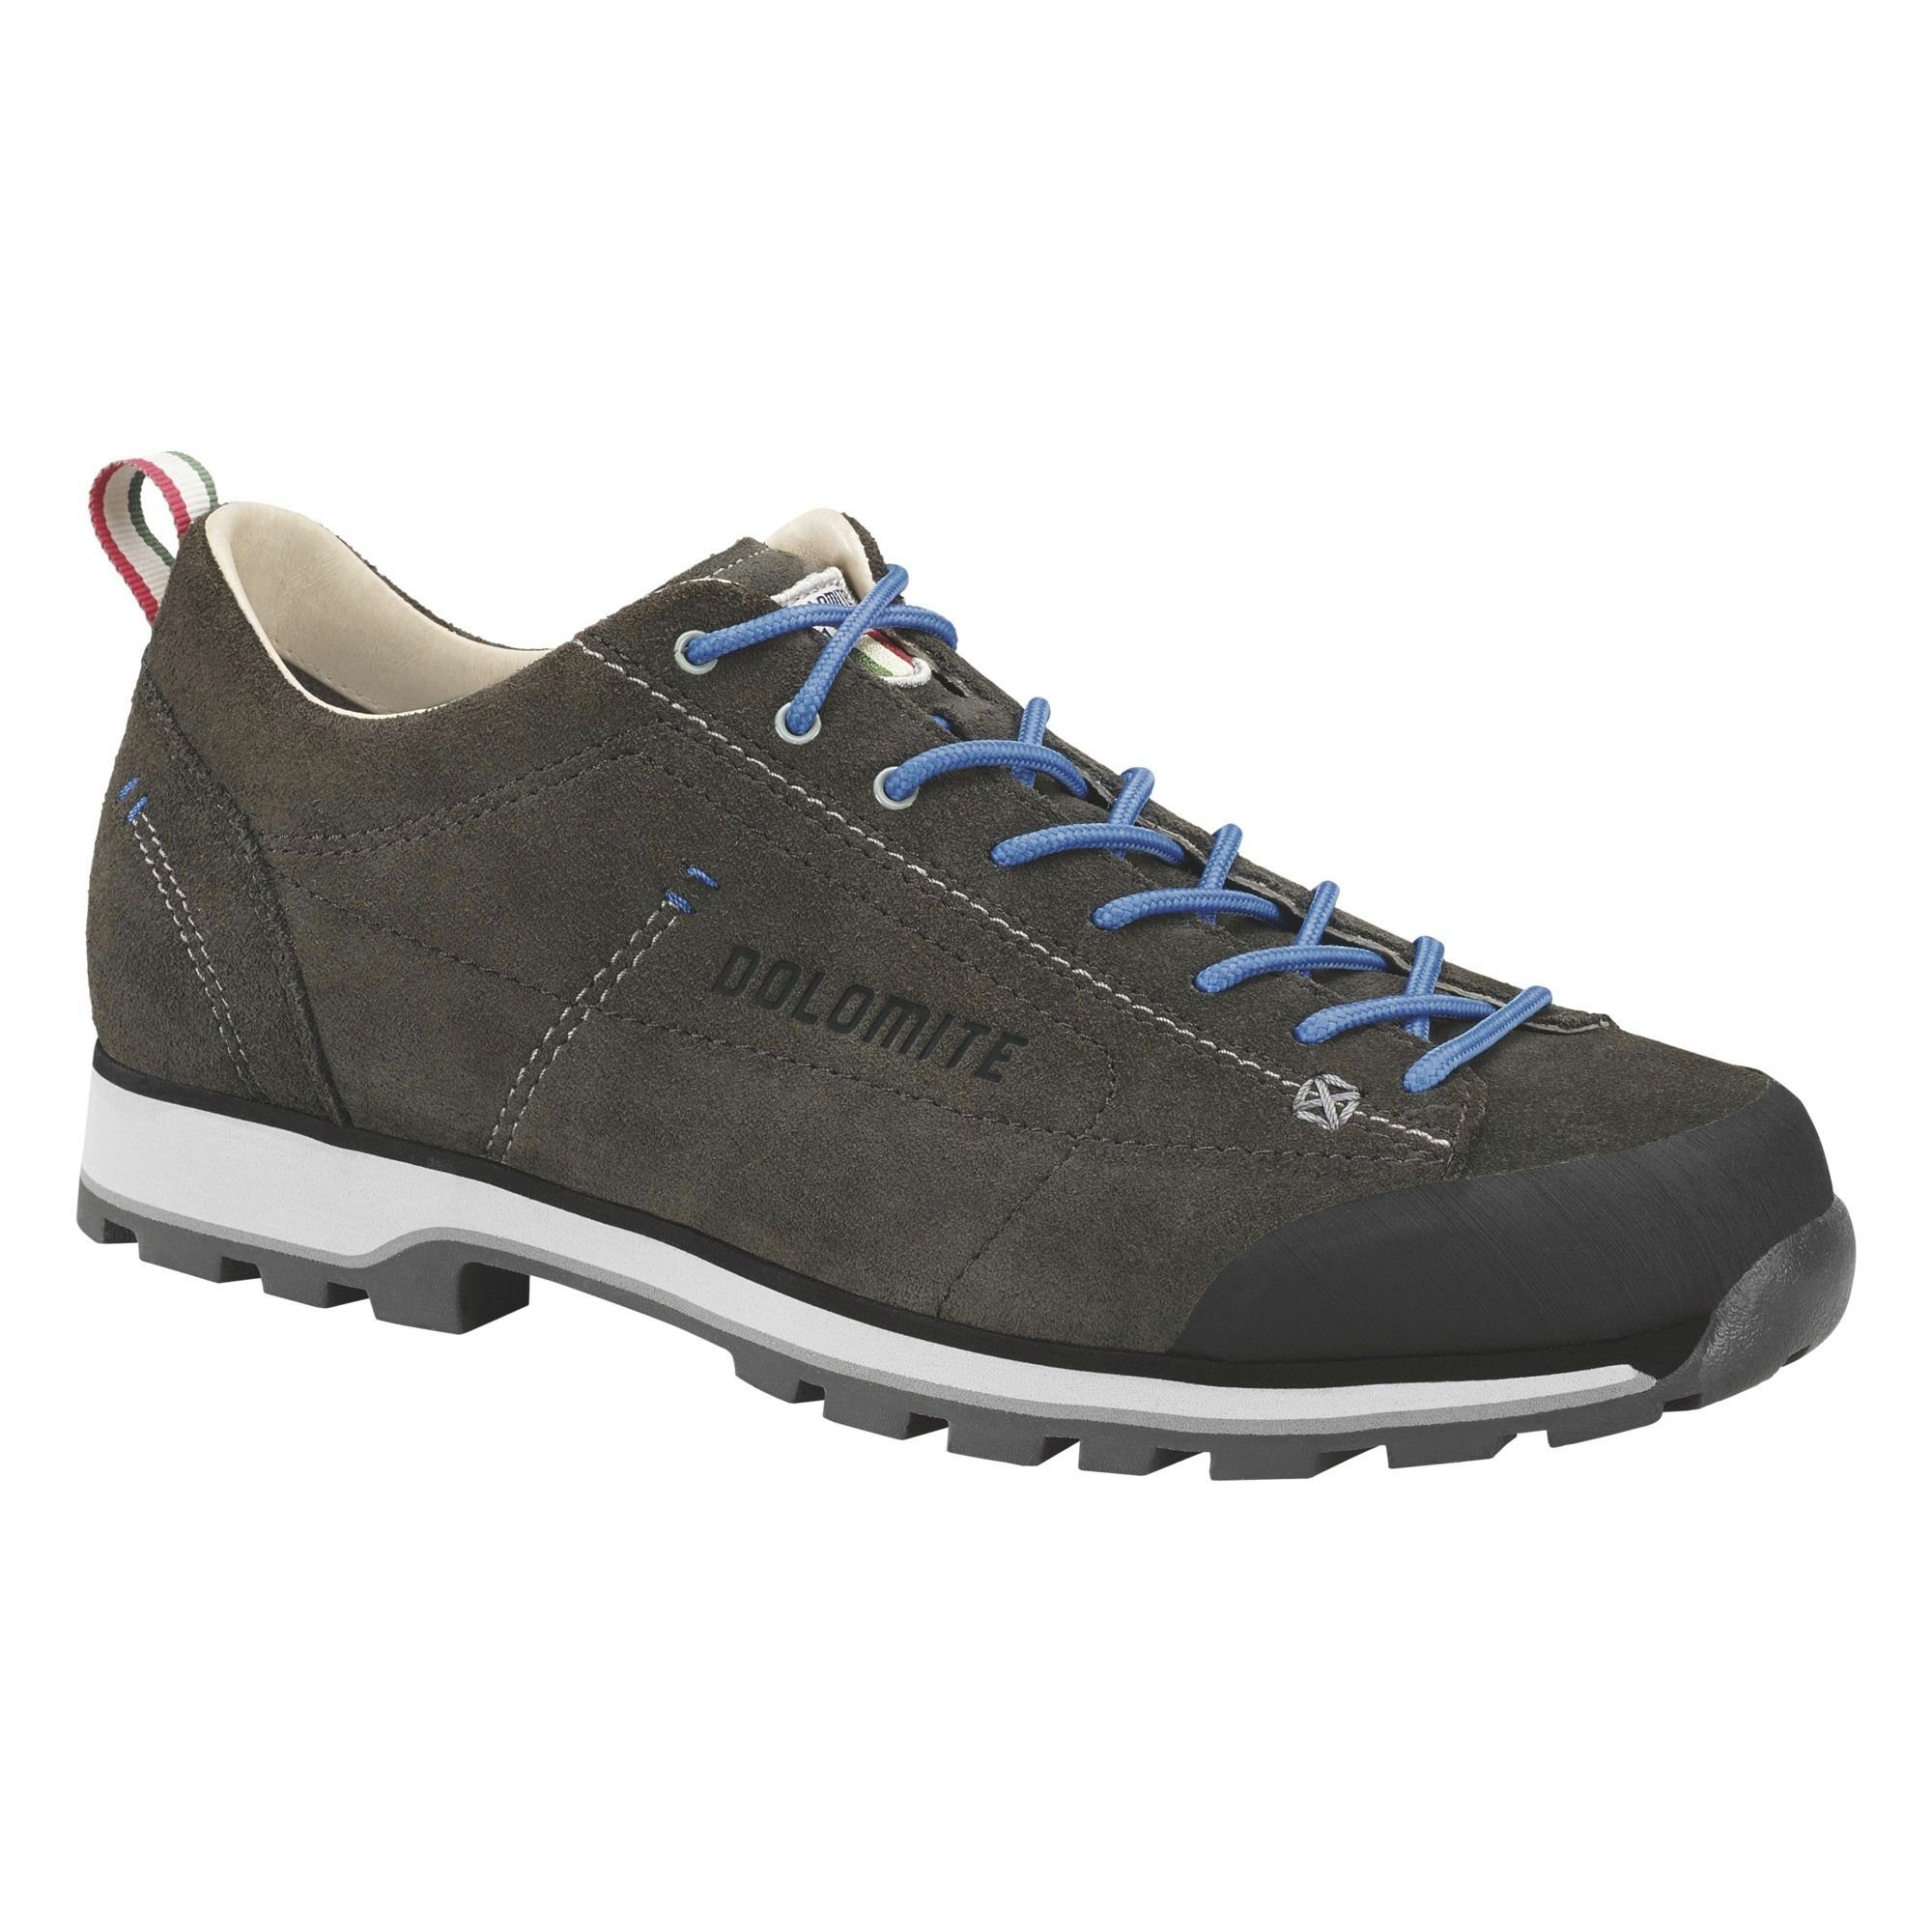 Cinquantaquattro 0023 Blue Low DOLOMITE Anthracite/ Dolomite Outdoorschuh Shoe